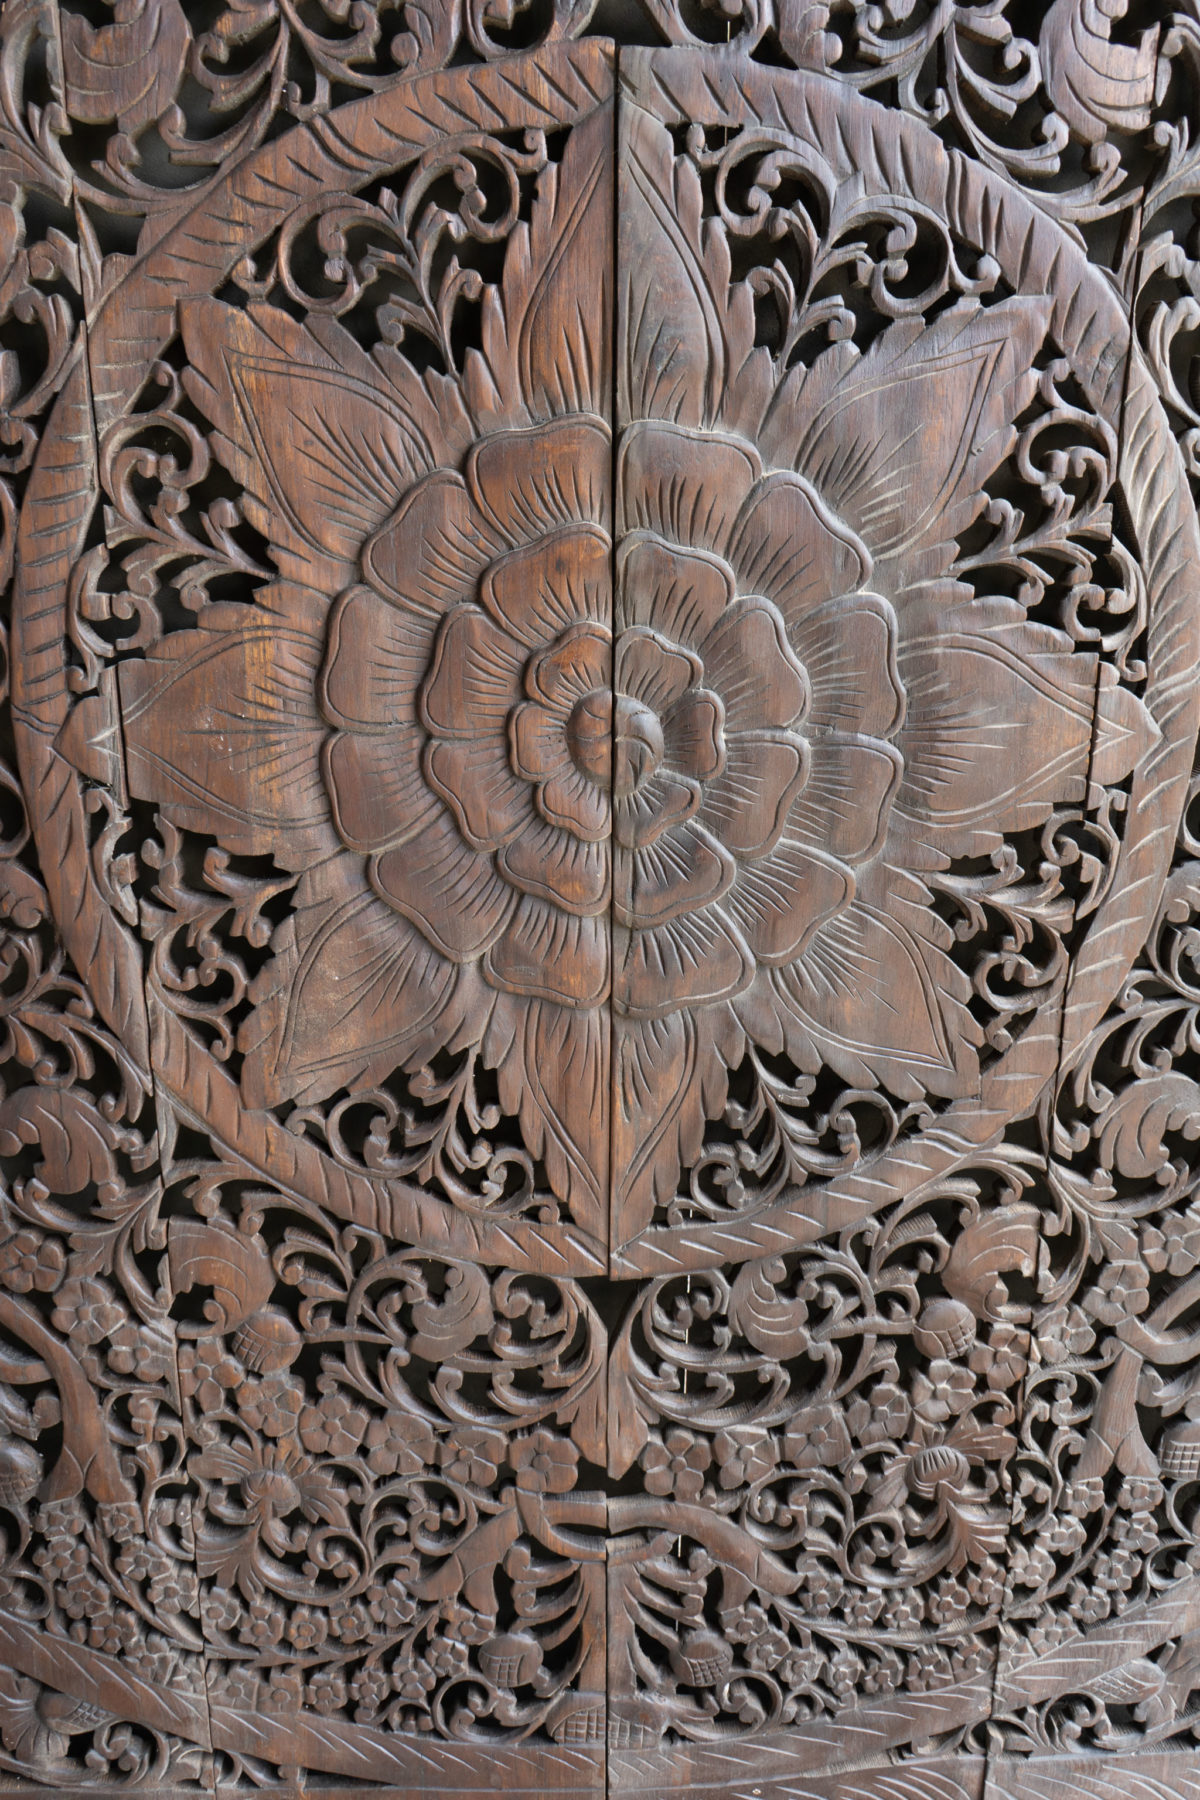 Lotus wood carving in teak